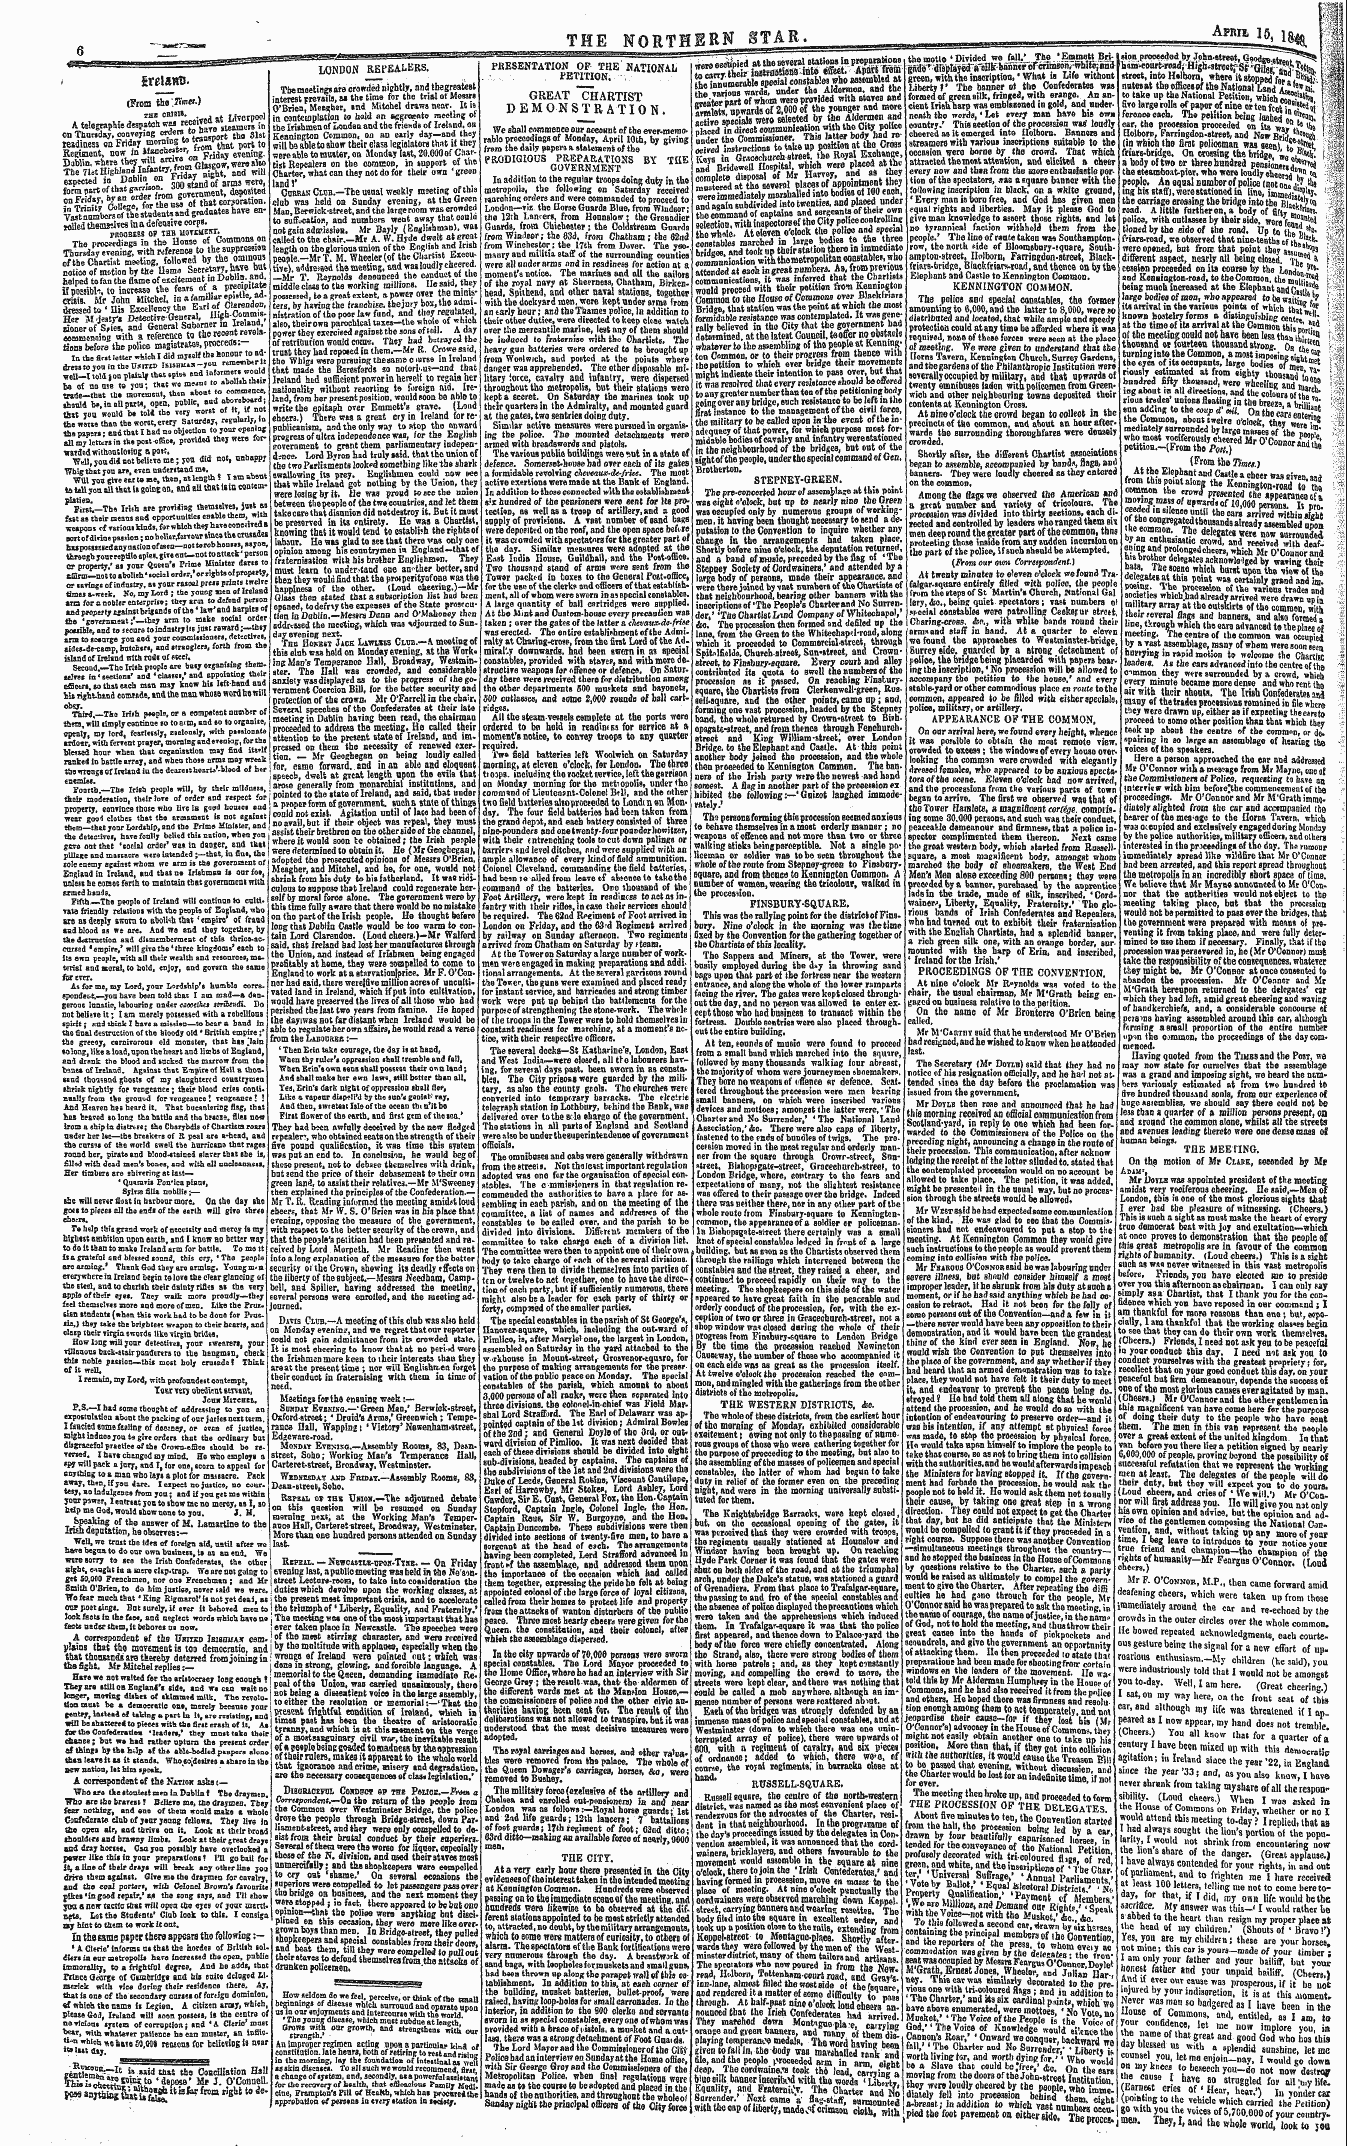 Northern Star (1837-1852): jS F Y, 4th edition - Sreisfltl